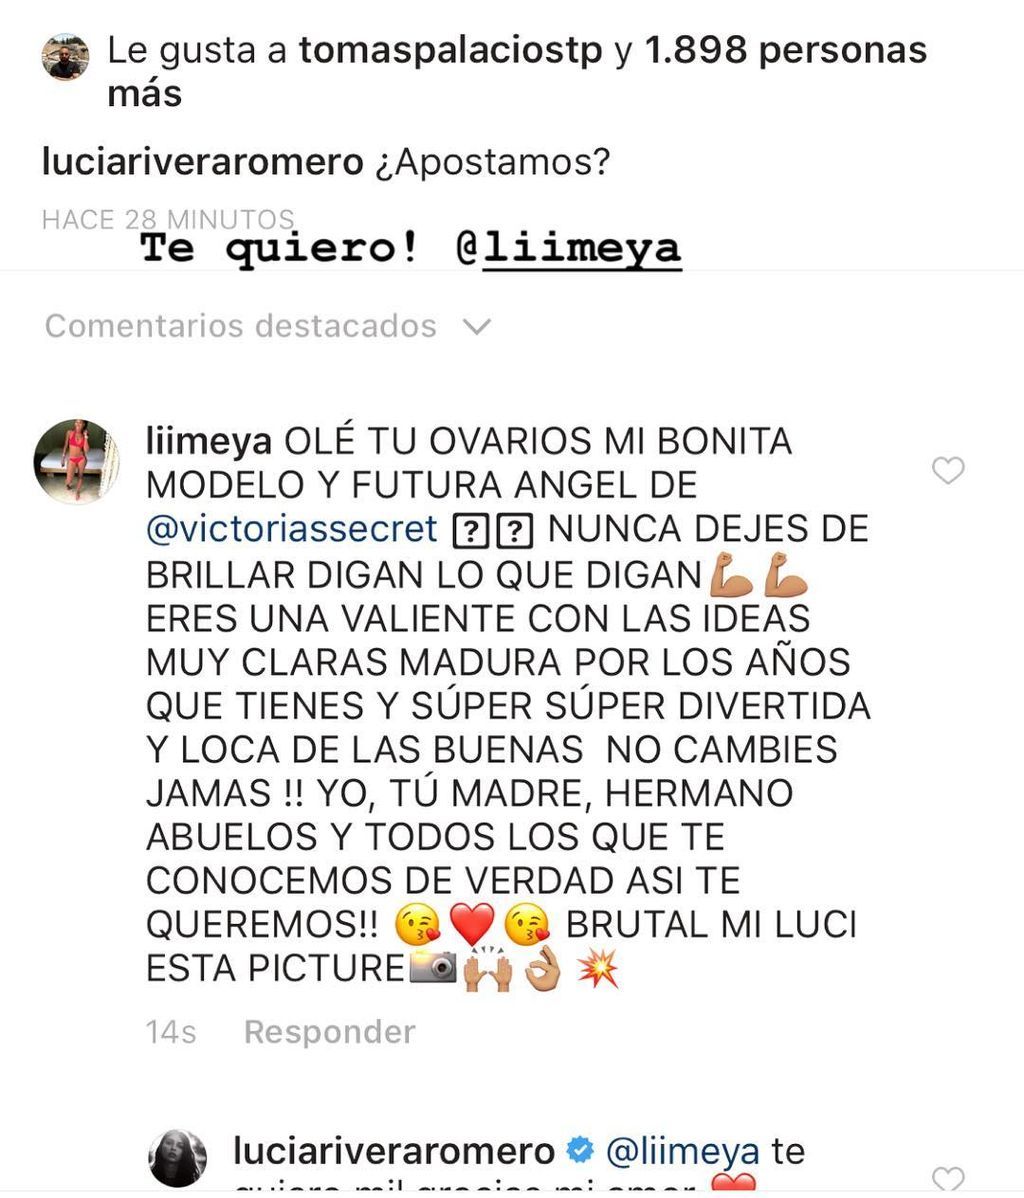 Lucia Rivera